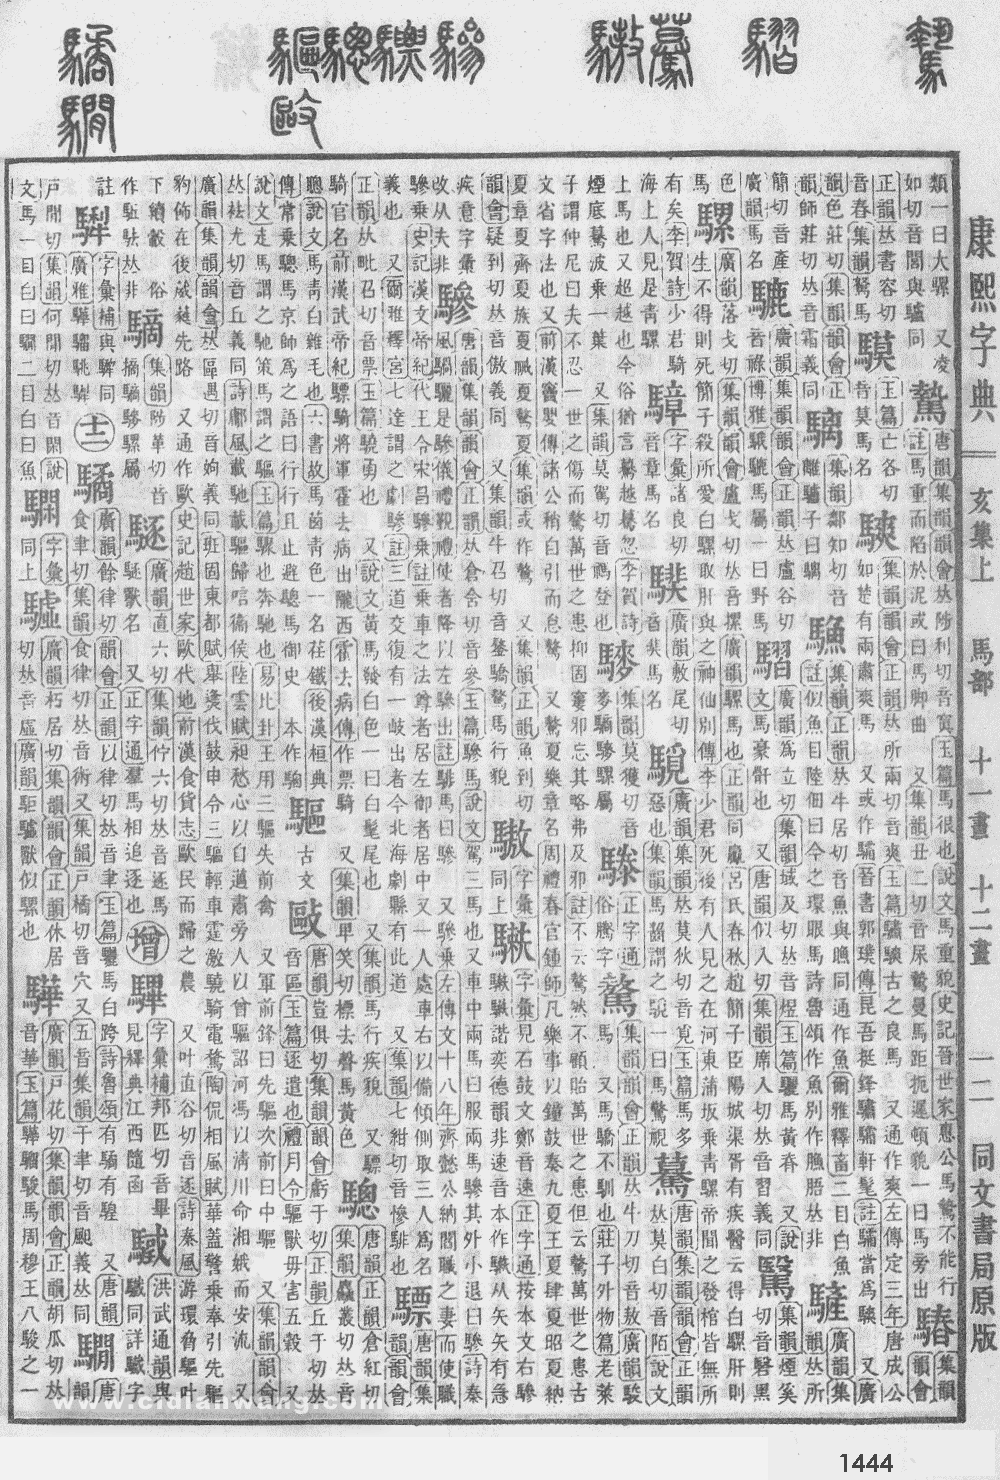 康熙字典掃描版第1444頁